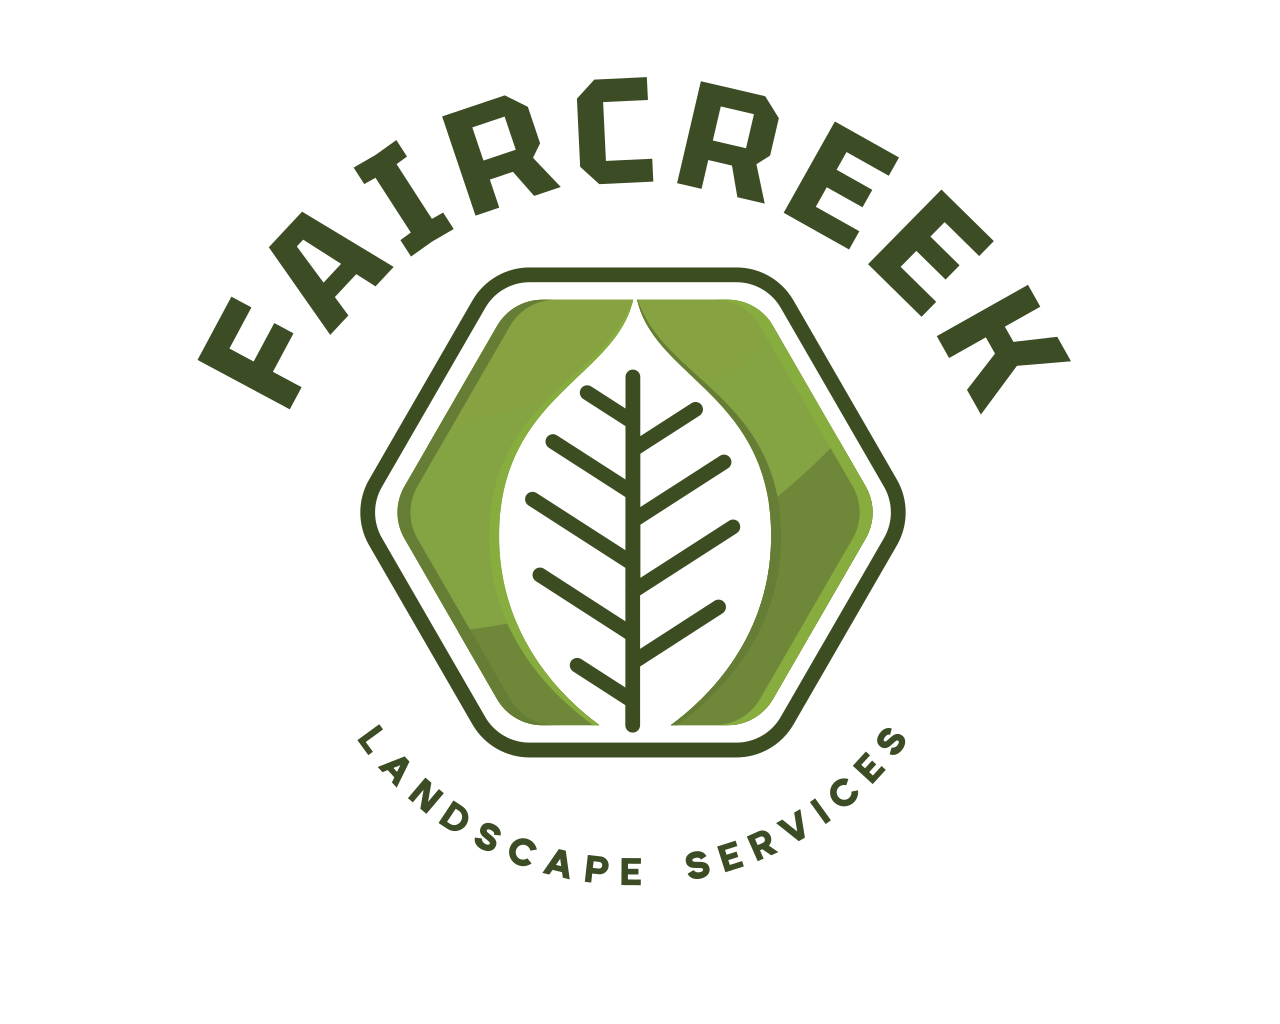 FAIRCREEK Landscape Services